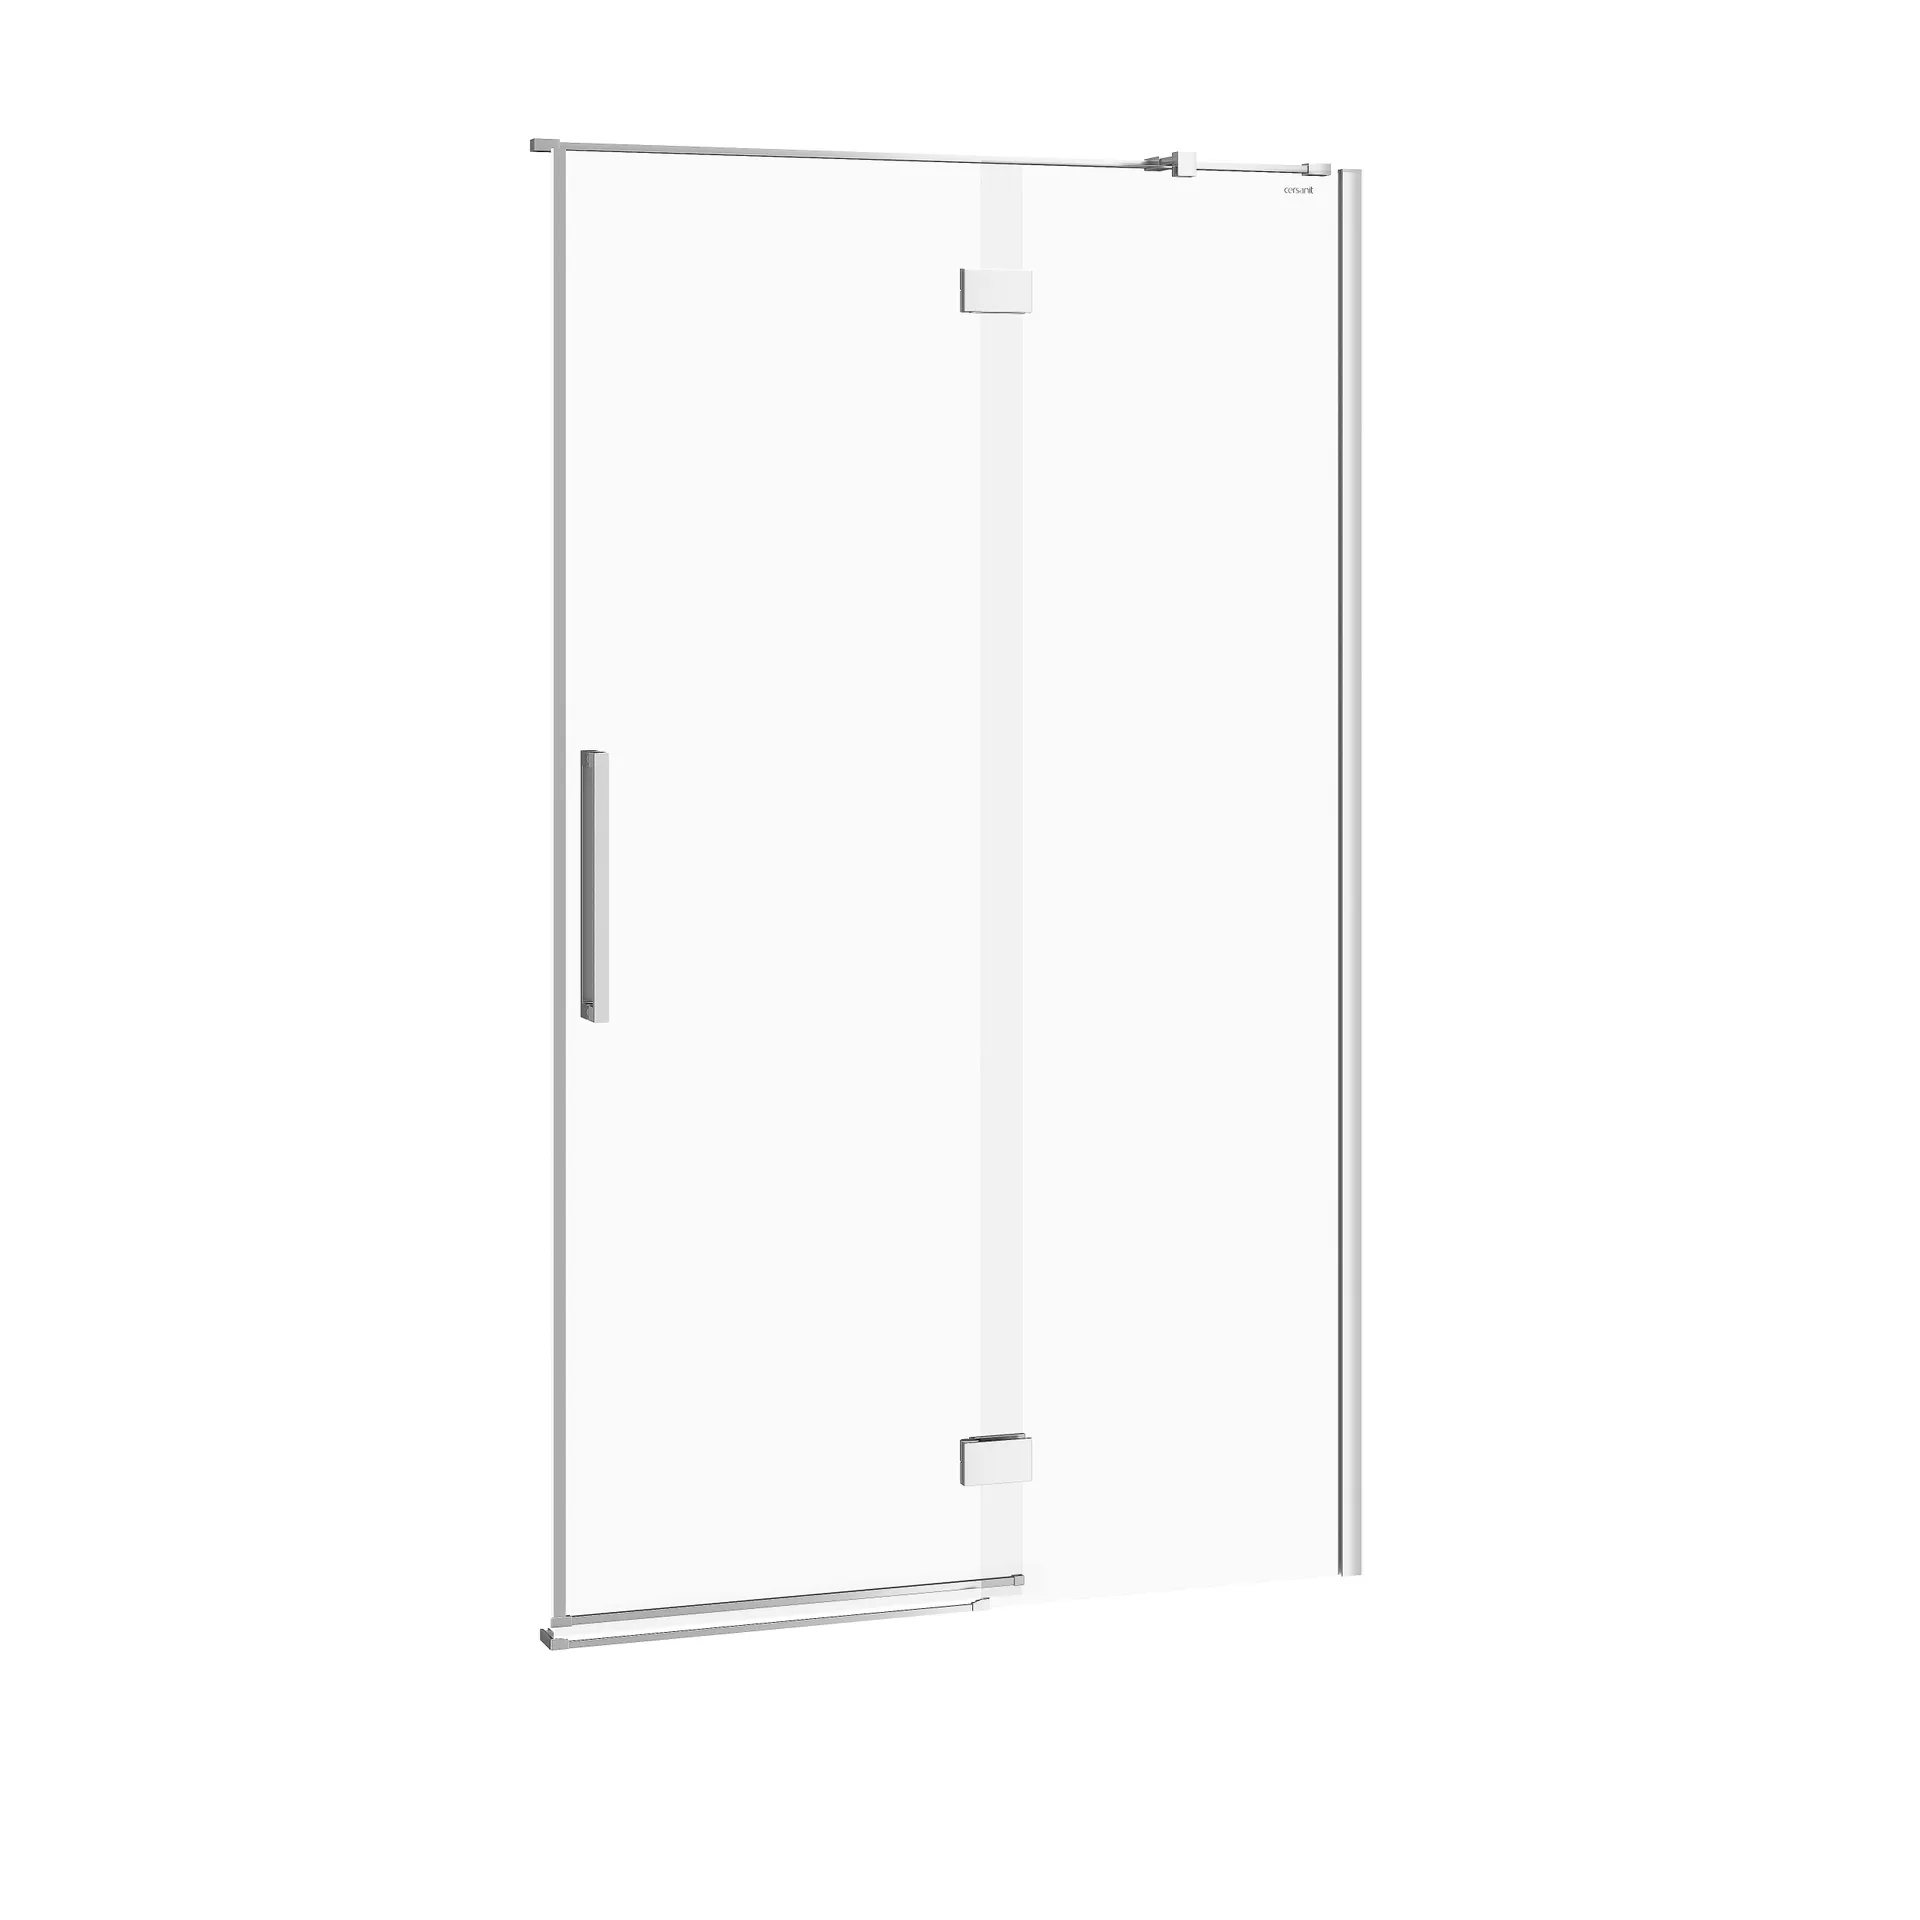 Drzwi prysznicowe Cersanit Crea 120X200 chrom transparentne S159-004